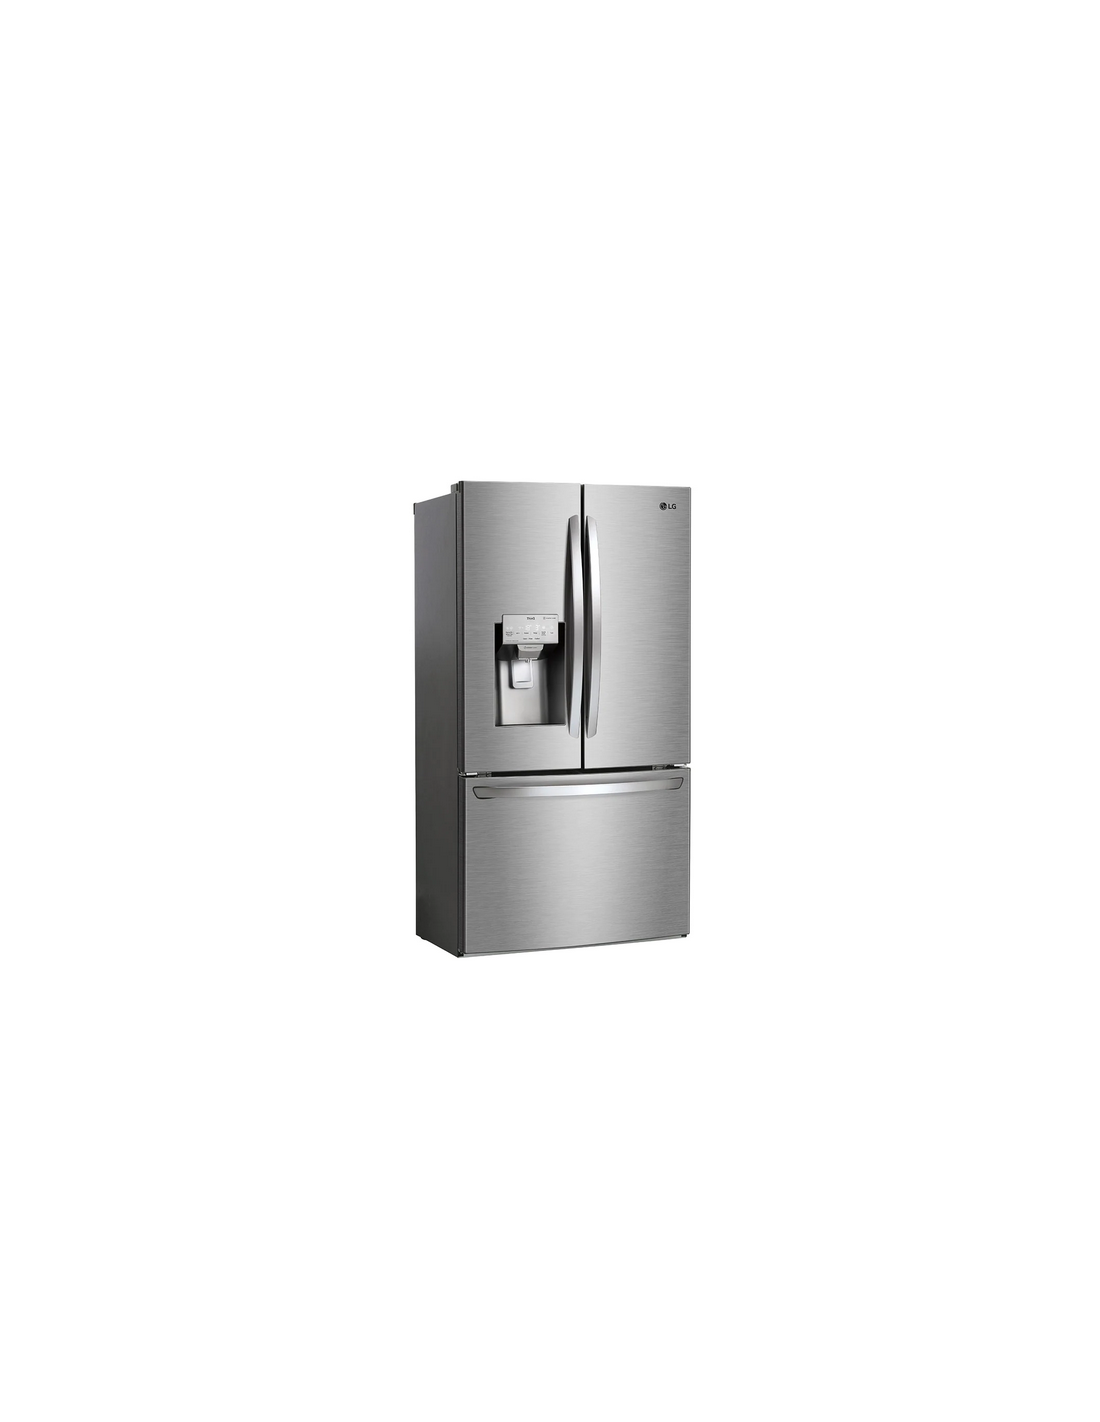 LG Réfrigérateur frigo double porte Inox 438L Froid ventilé No frost Wi-Fi